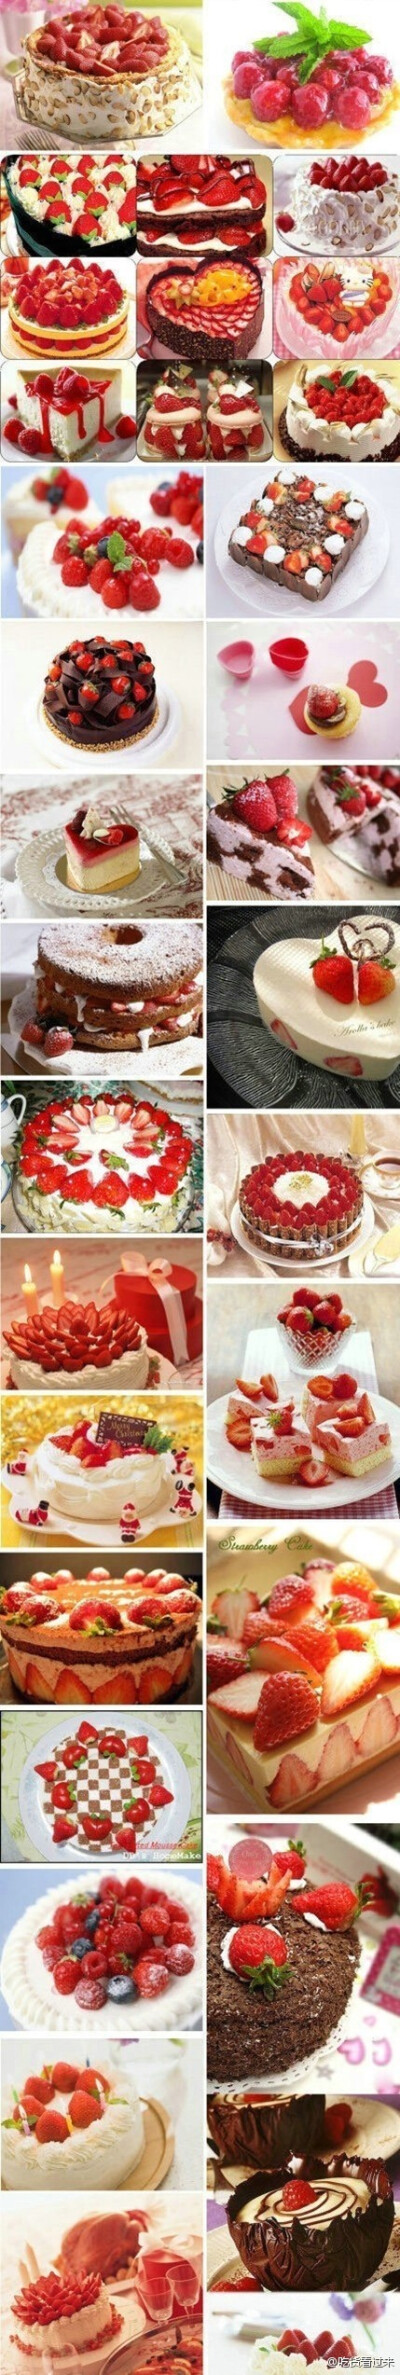 甜食控！草莓派！草莓冰激凌！草莓巧克力蛋糕~~~